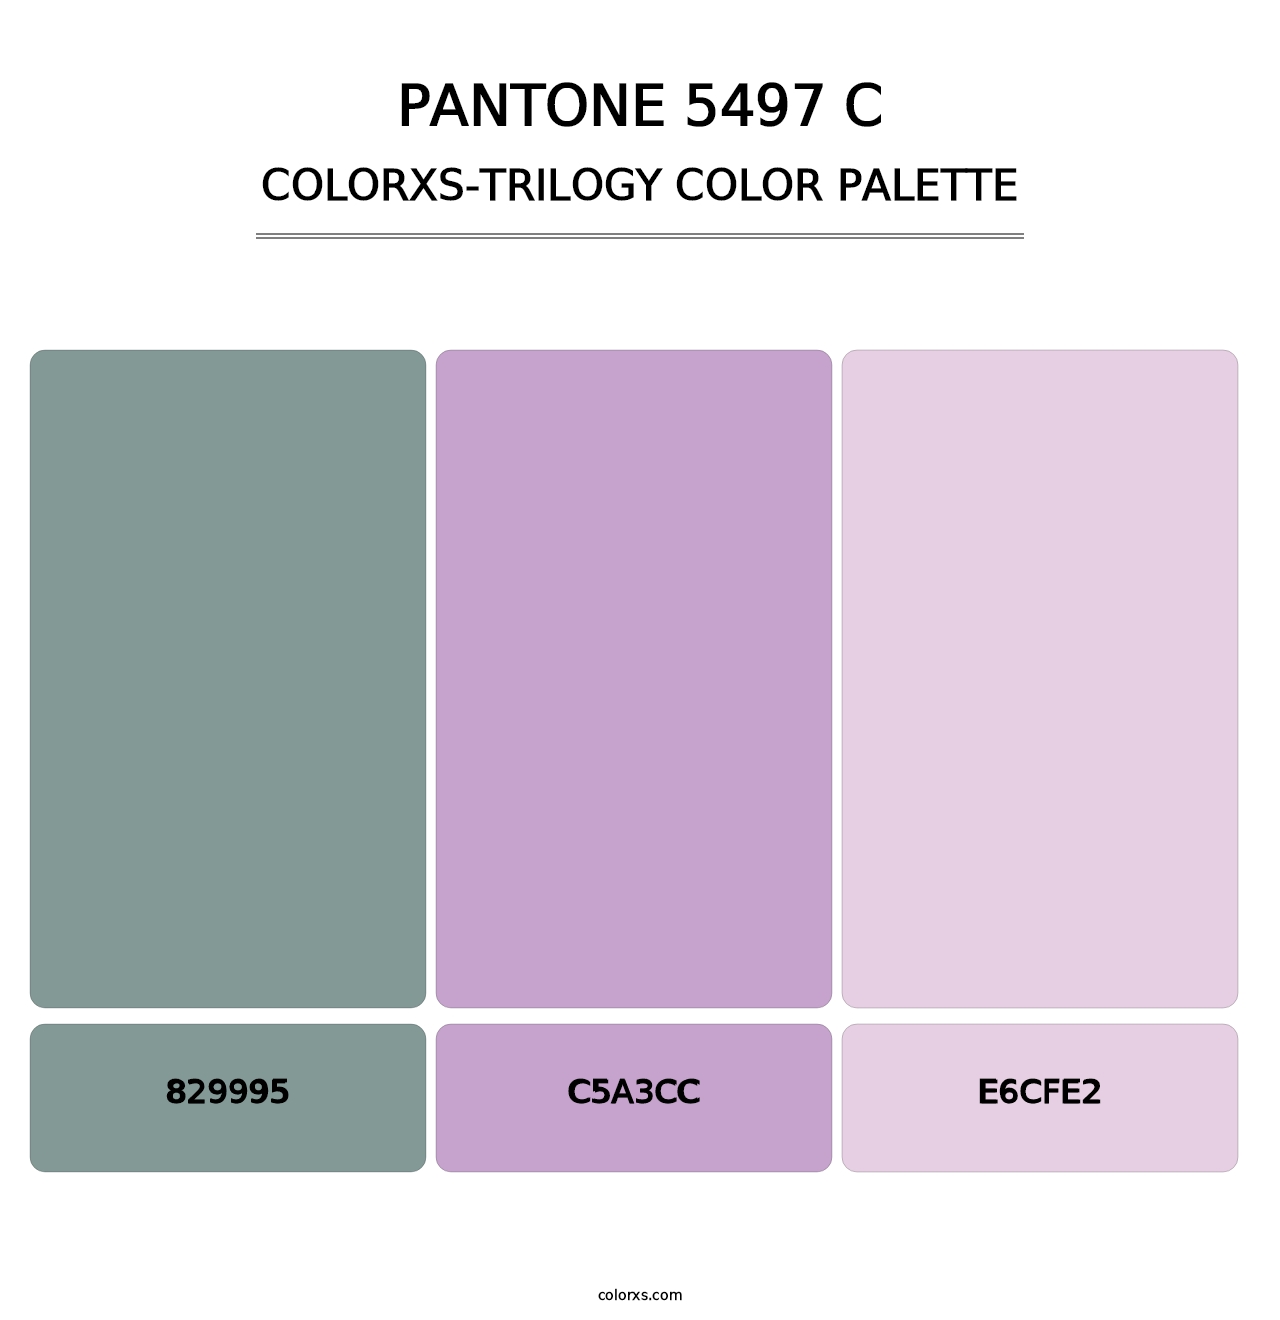 PANTONE 5497 C - Colorxs Trilogy Palette